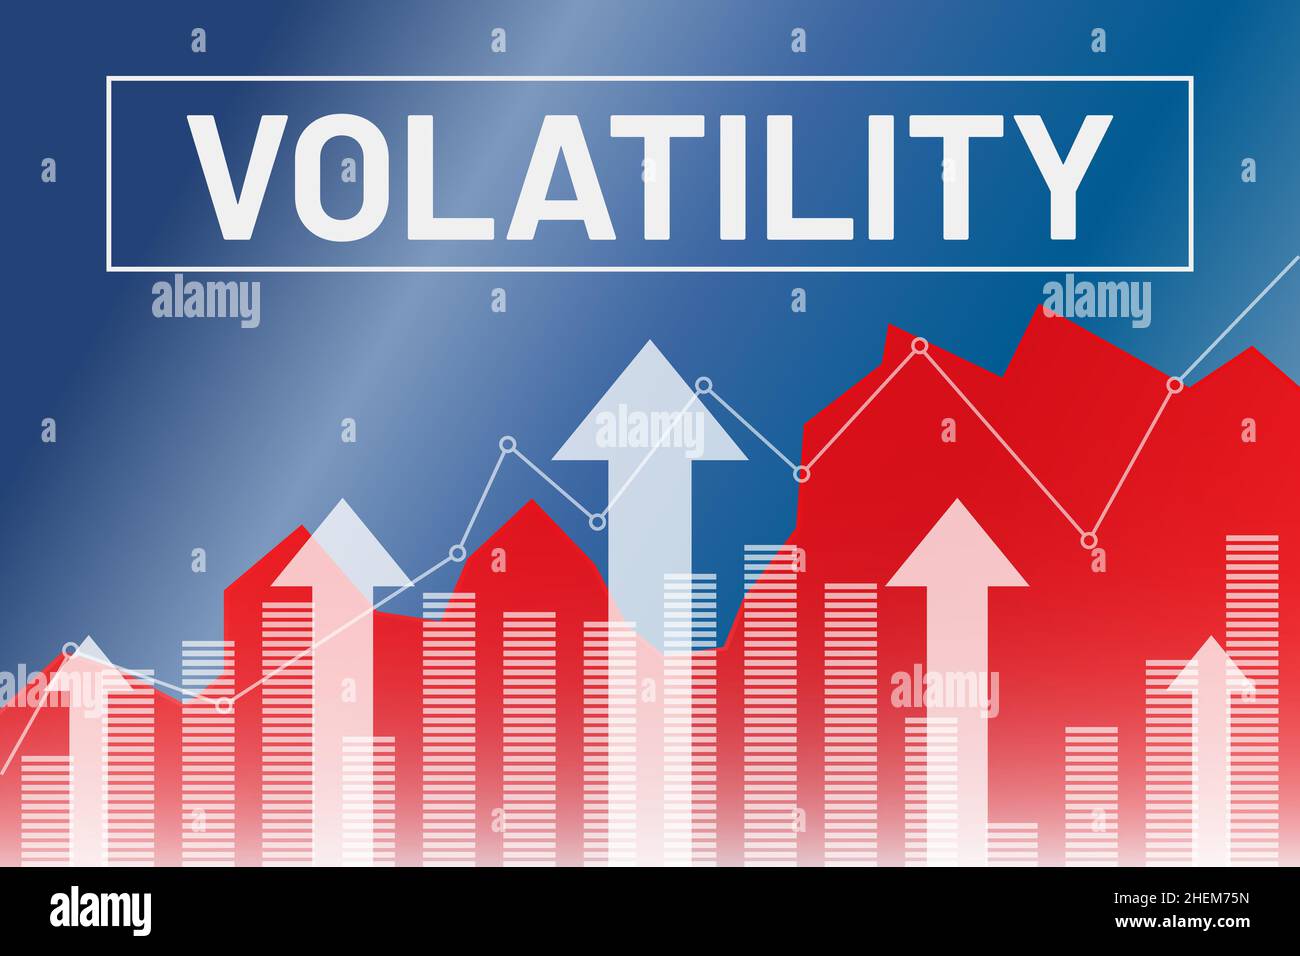 Volatilité du terme sur le marché financier, fond bleu et rouge de la finance à partir des colonnes, flèches.Concept de marché financier Illustration de Vecteur